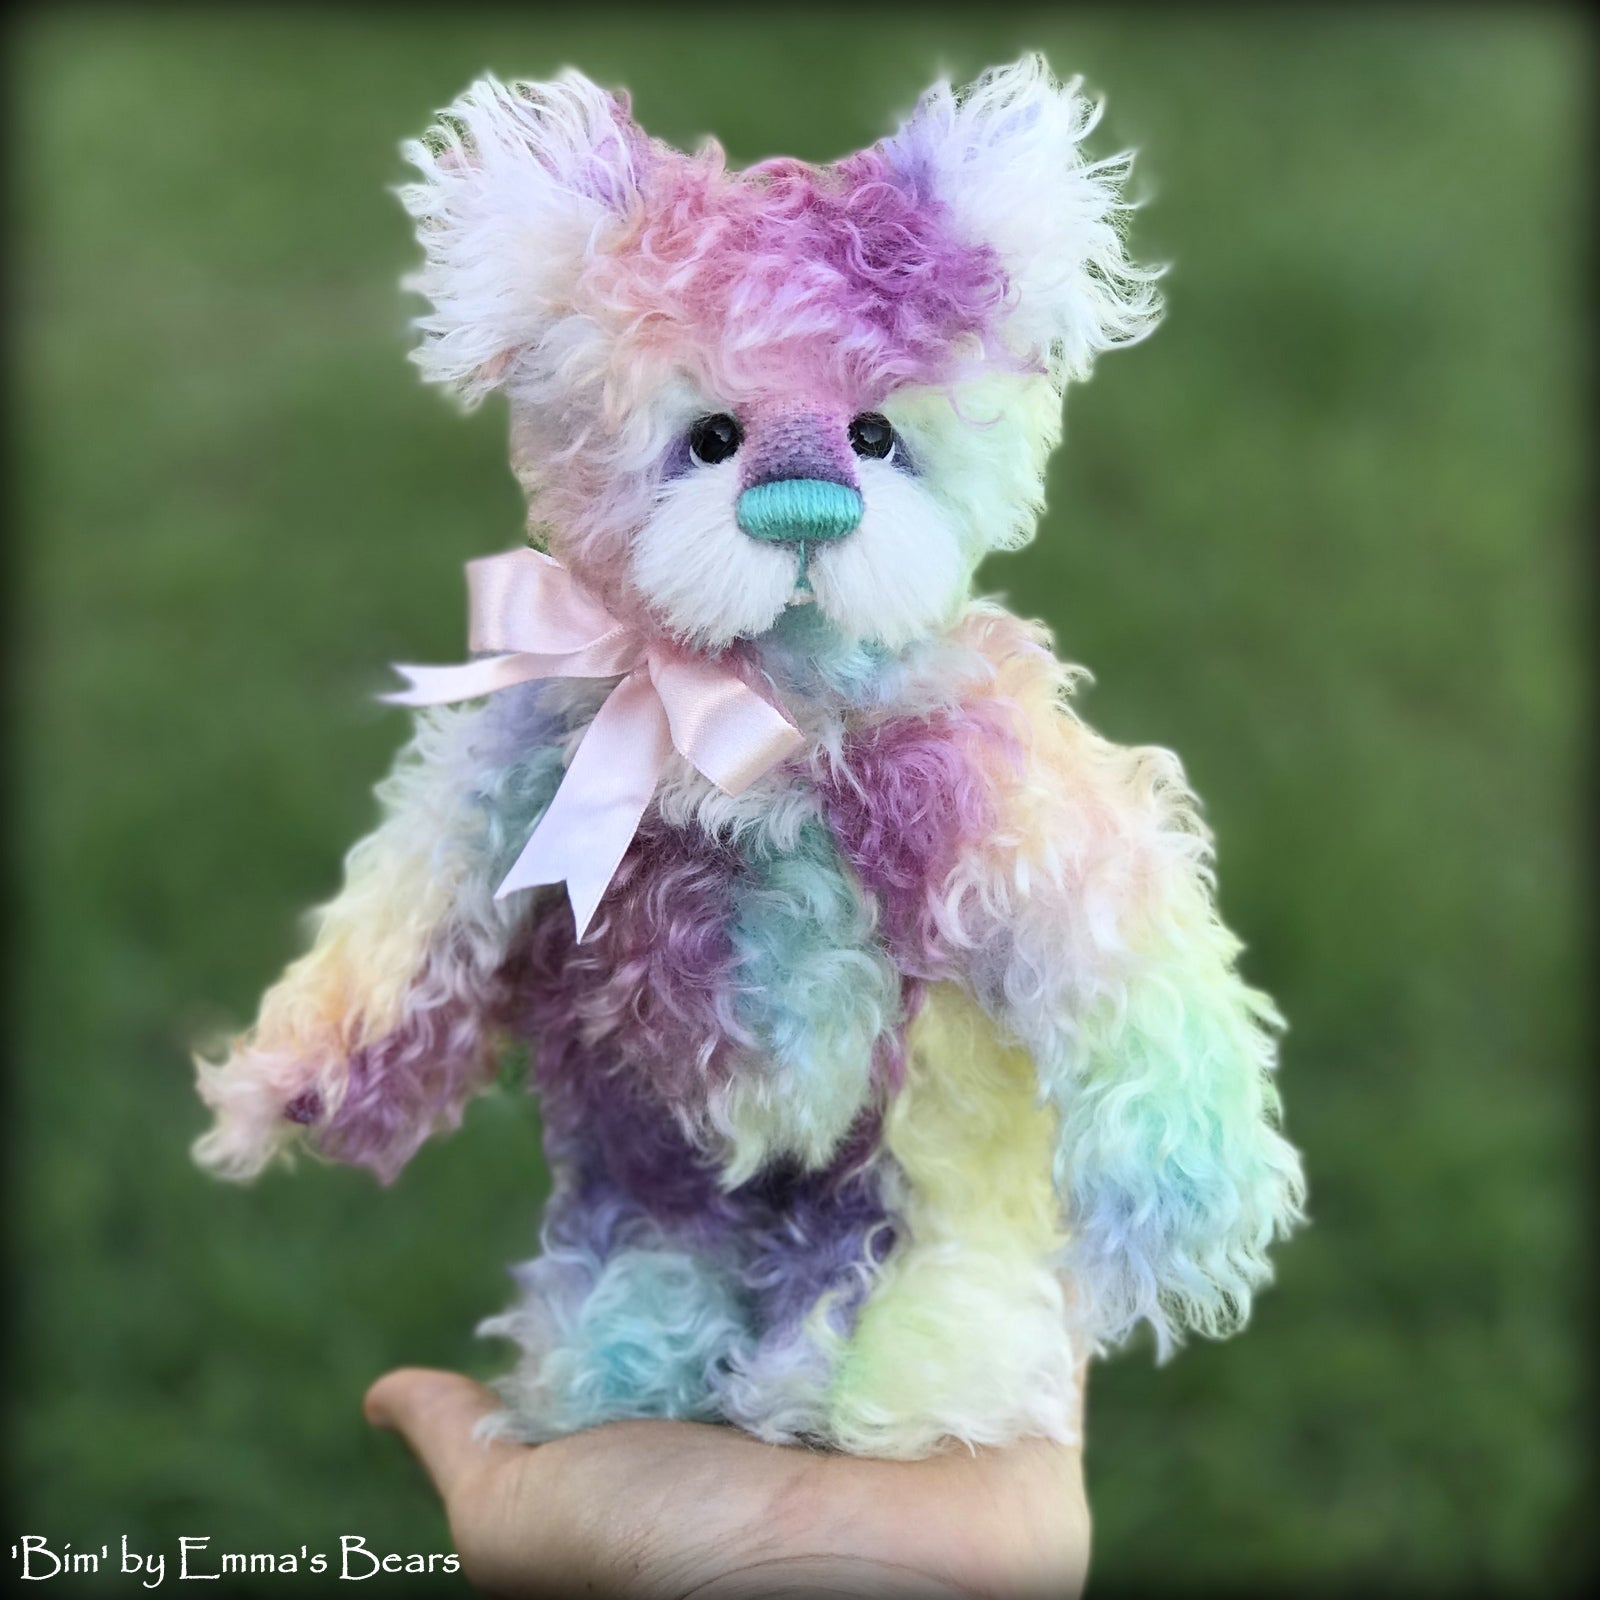 Bim - 8" Rainbow Mohair Artist Bear by Emma's Bears - OOAK